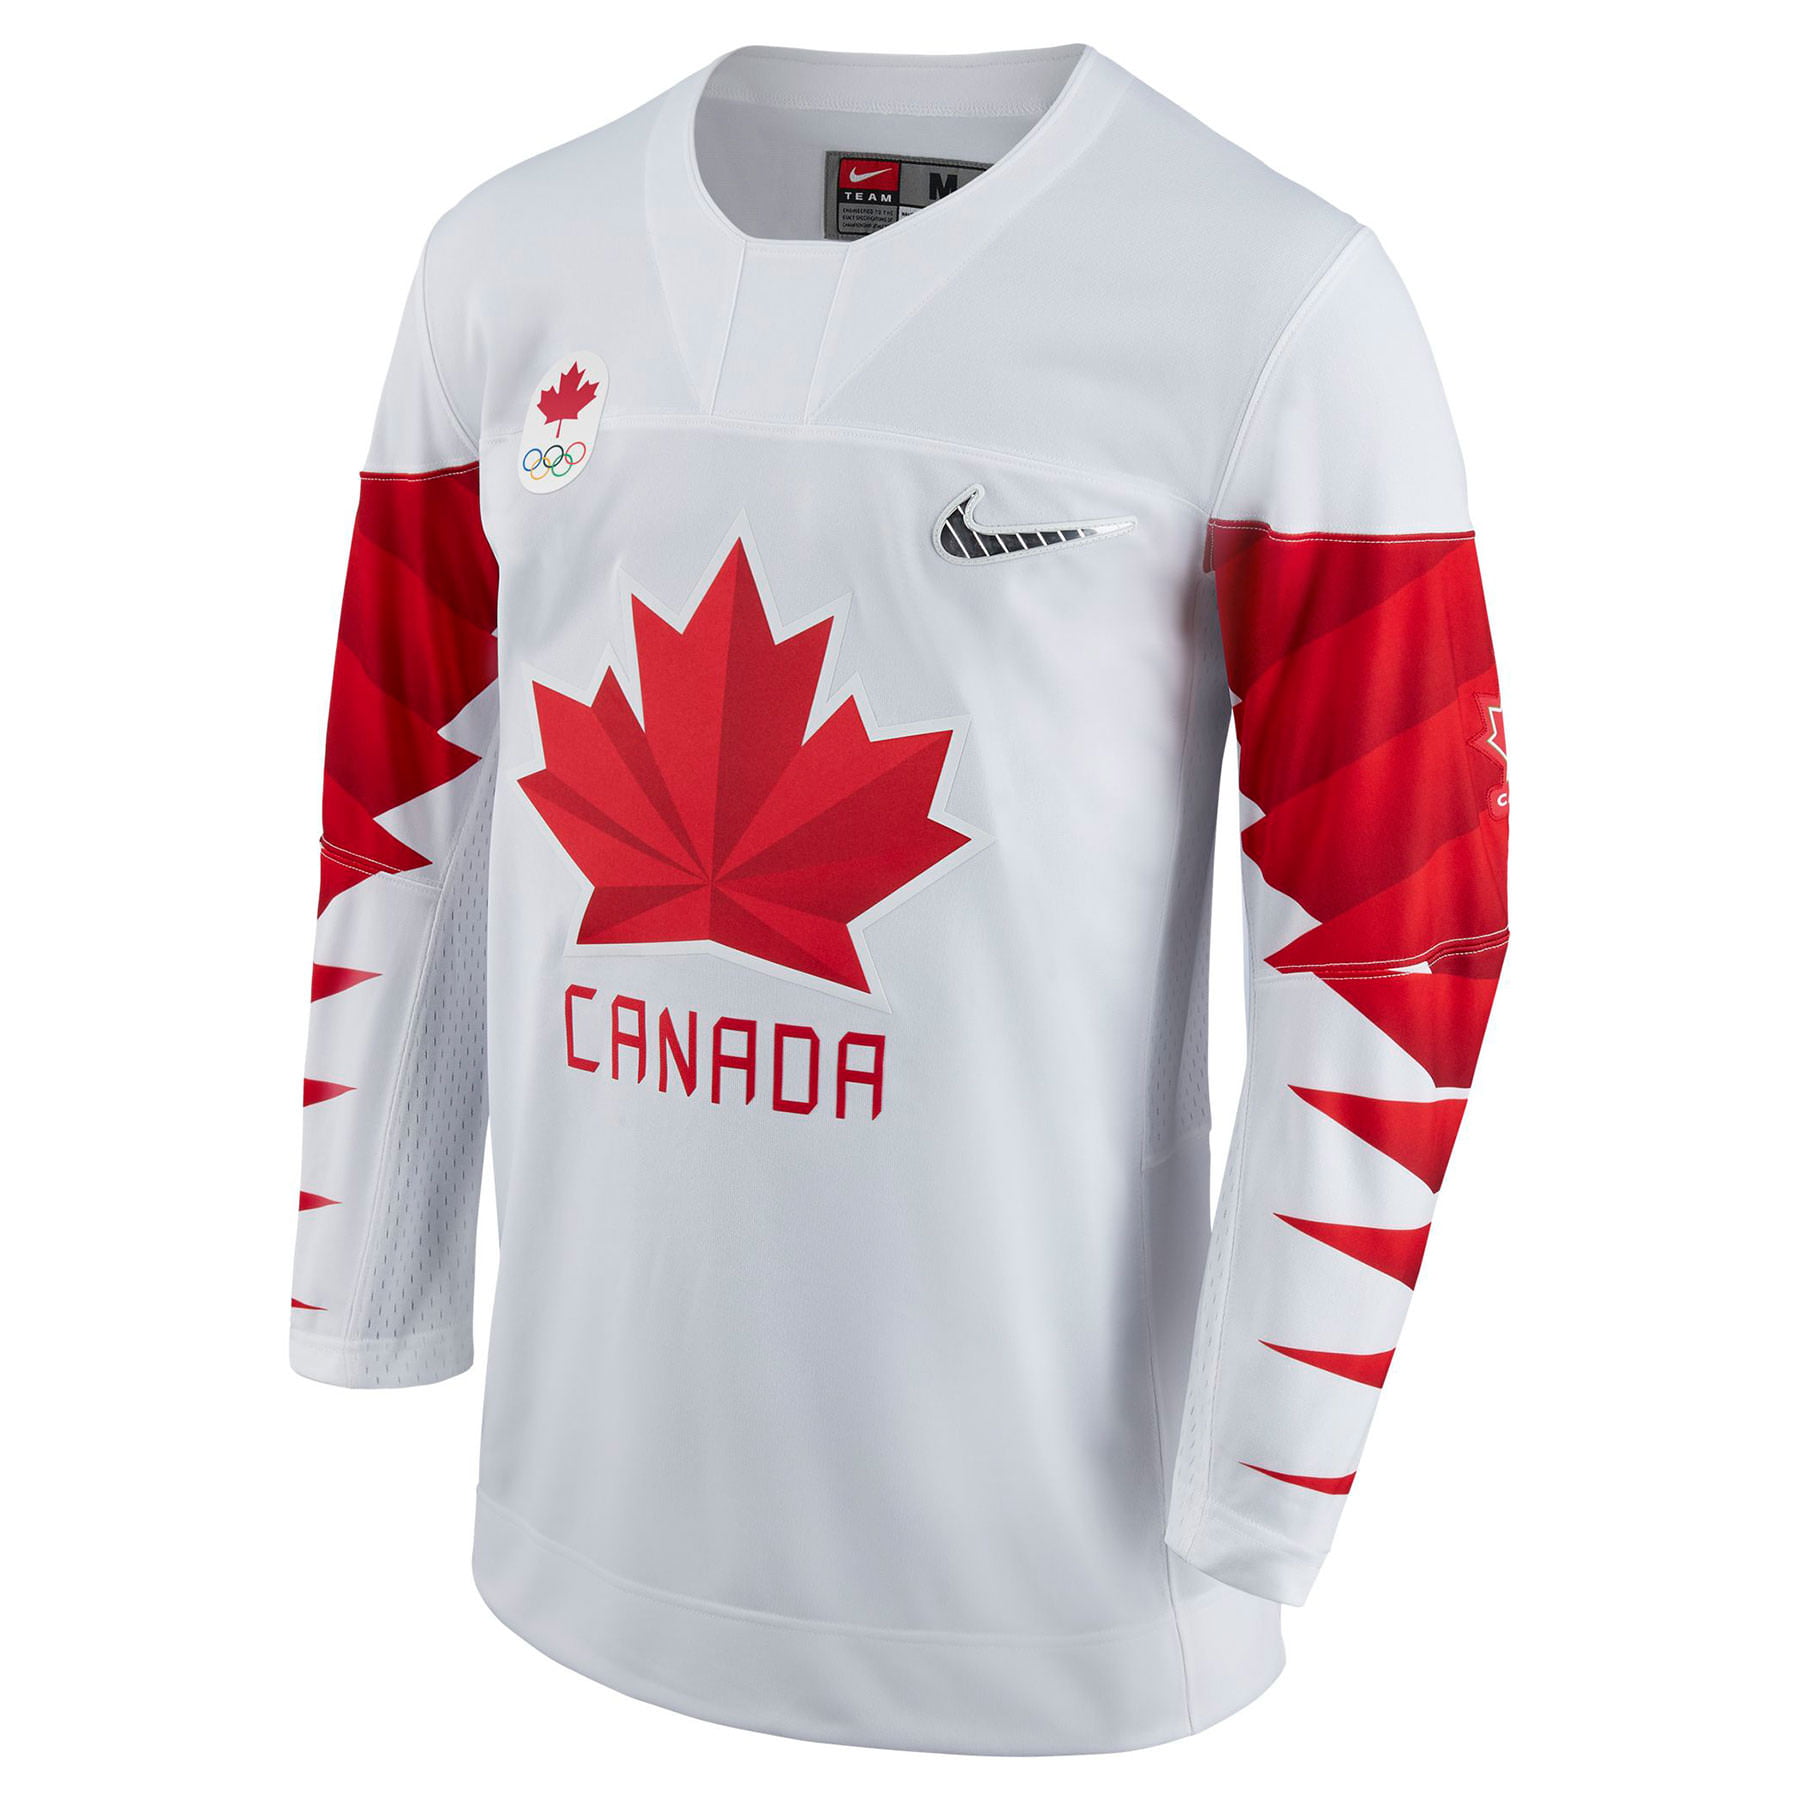 canada hockey jersey 2018